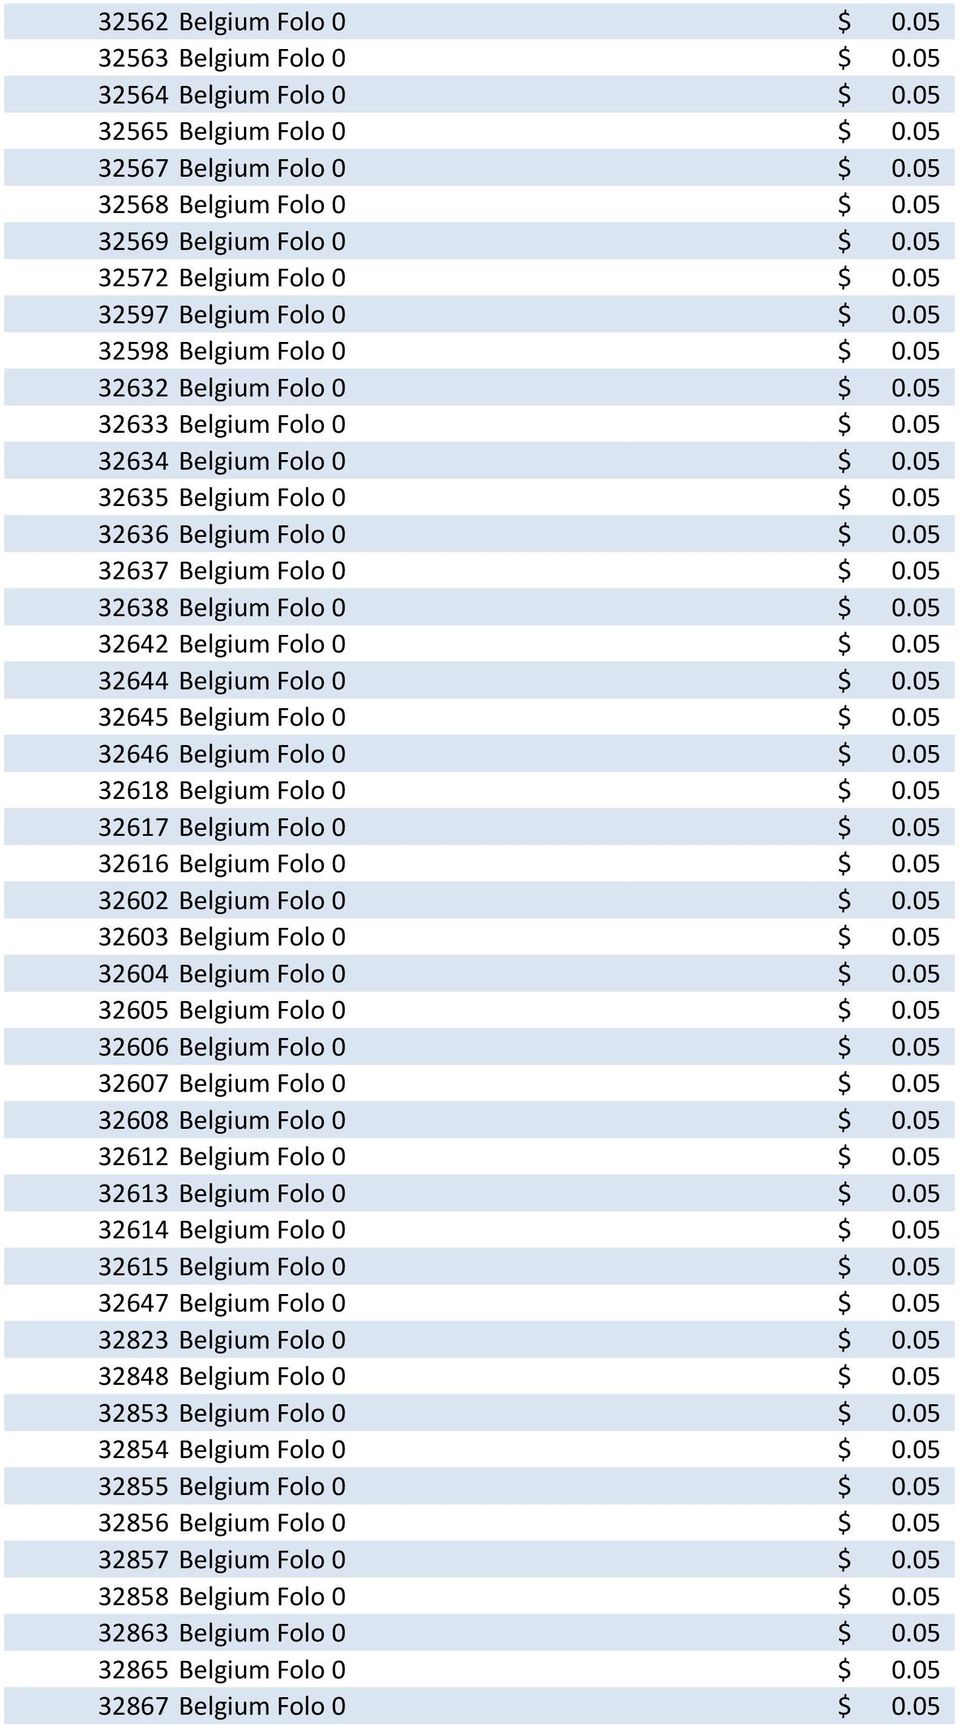 05 32636 Belgium Folo 0 $ 0.05 32637 Belgium Folo 0 $ 0.05 32638 Belgium Folo 0 $ 0.05 32642 Belgium Folo 0 $ 0.05 32644 Belgium Folo 0 $ 0.05 32645 Belgium Folo 0 $ 0.05 32646 Belgium Folo 0 $ 0.